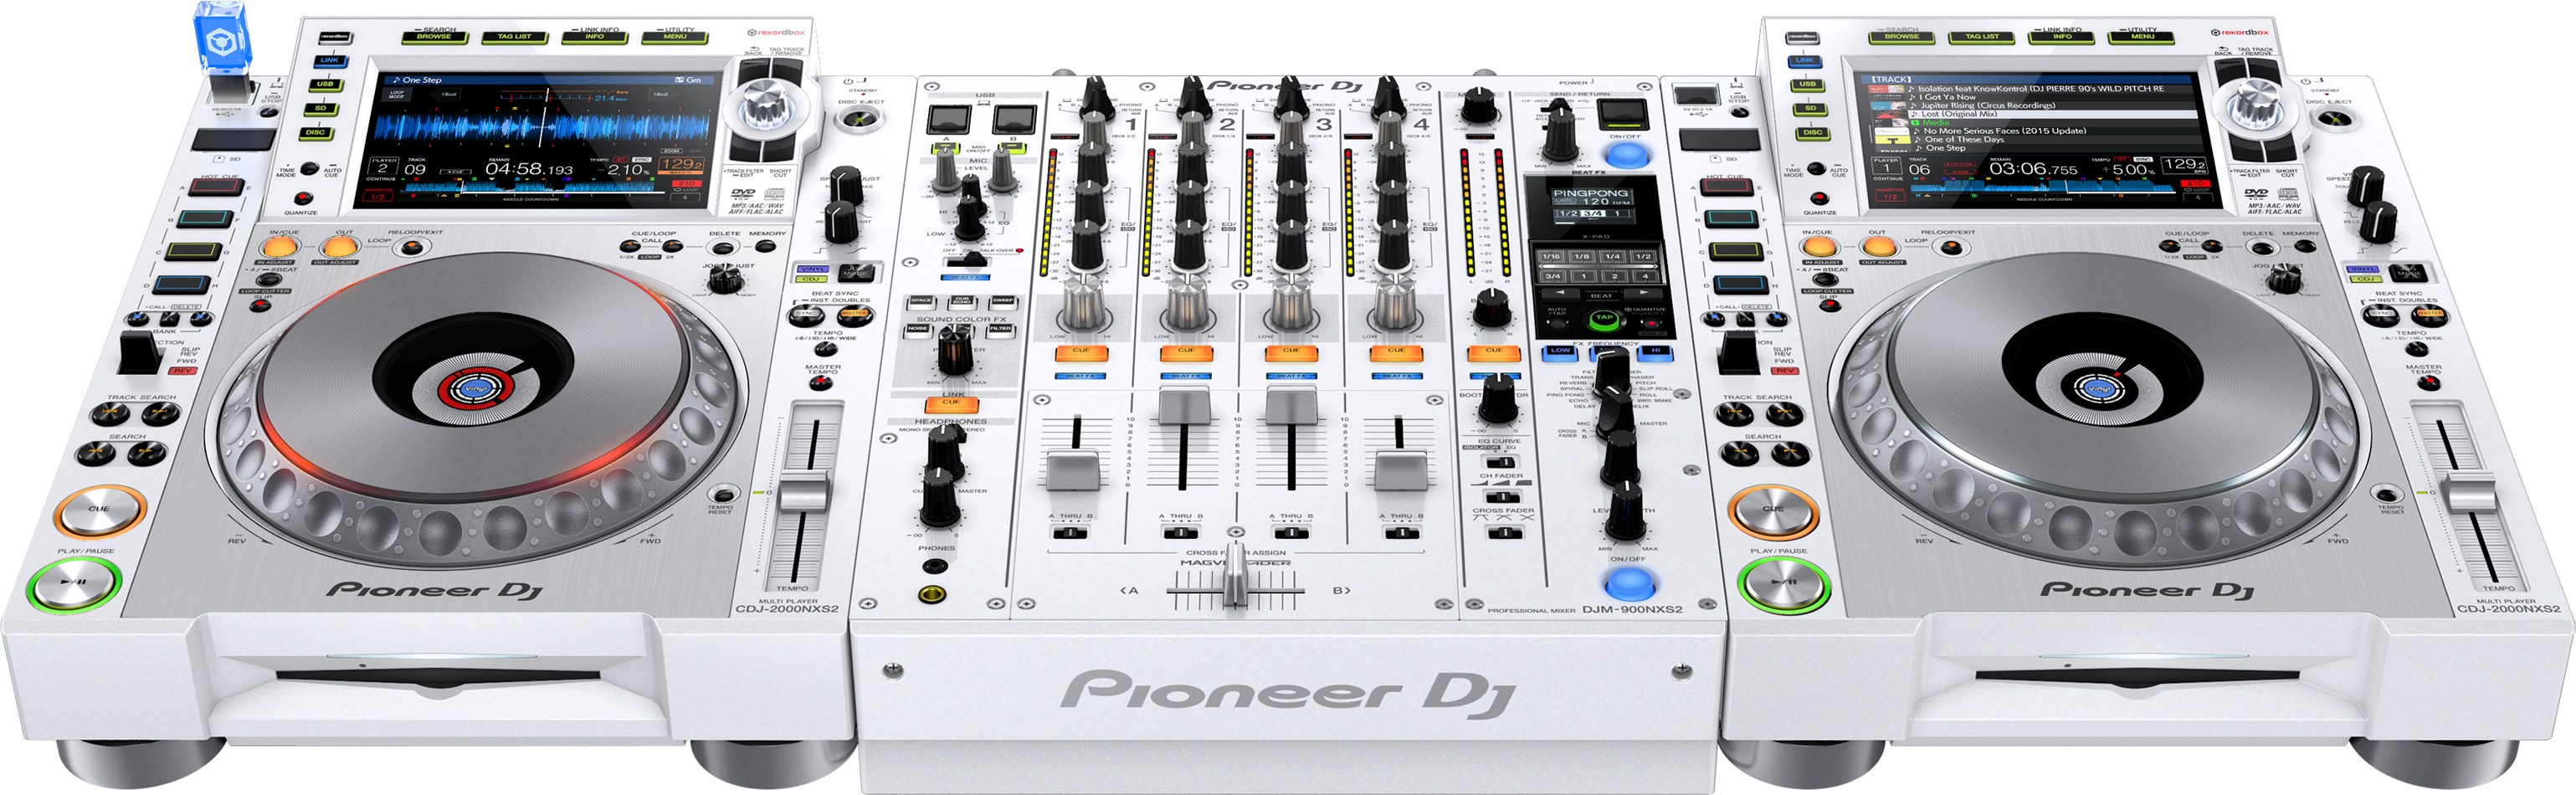 Pioneer DJ presenta el Pioneer CDJ-2000NXS2-W y la Pioneer DJM-900NXS2-W en una edición limitada en blanco